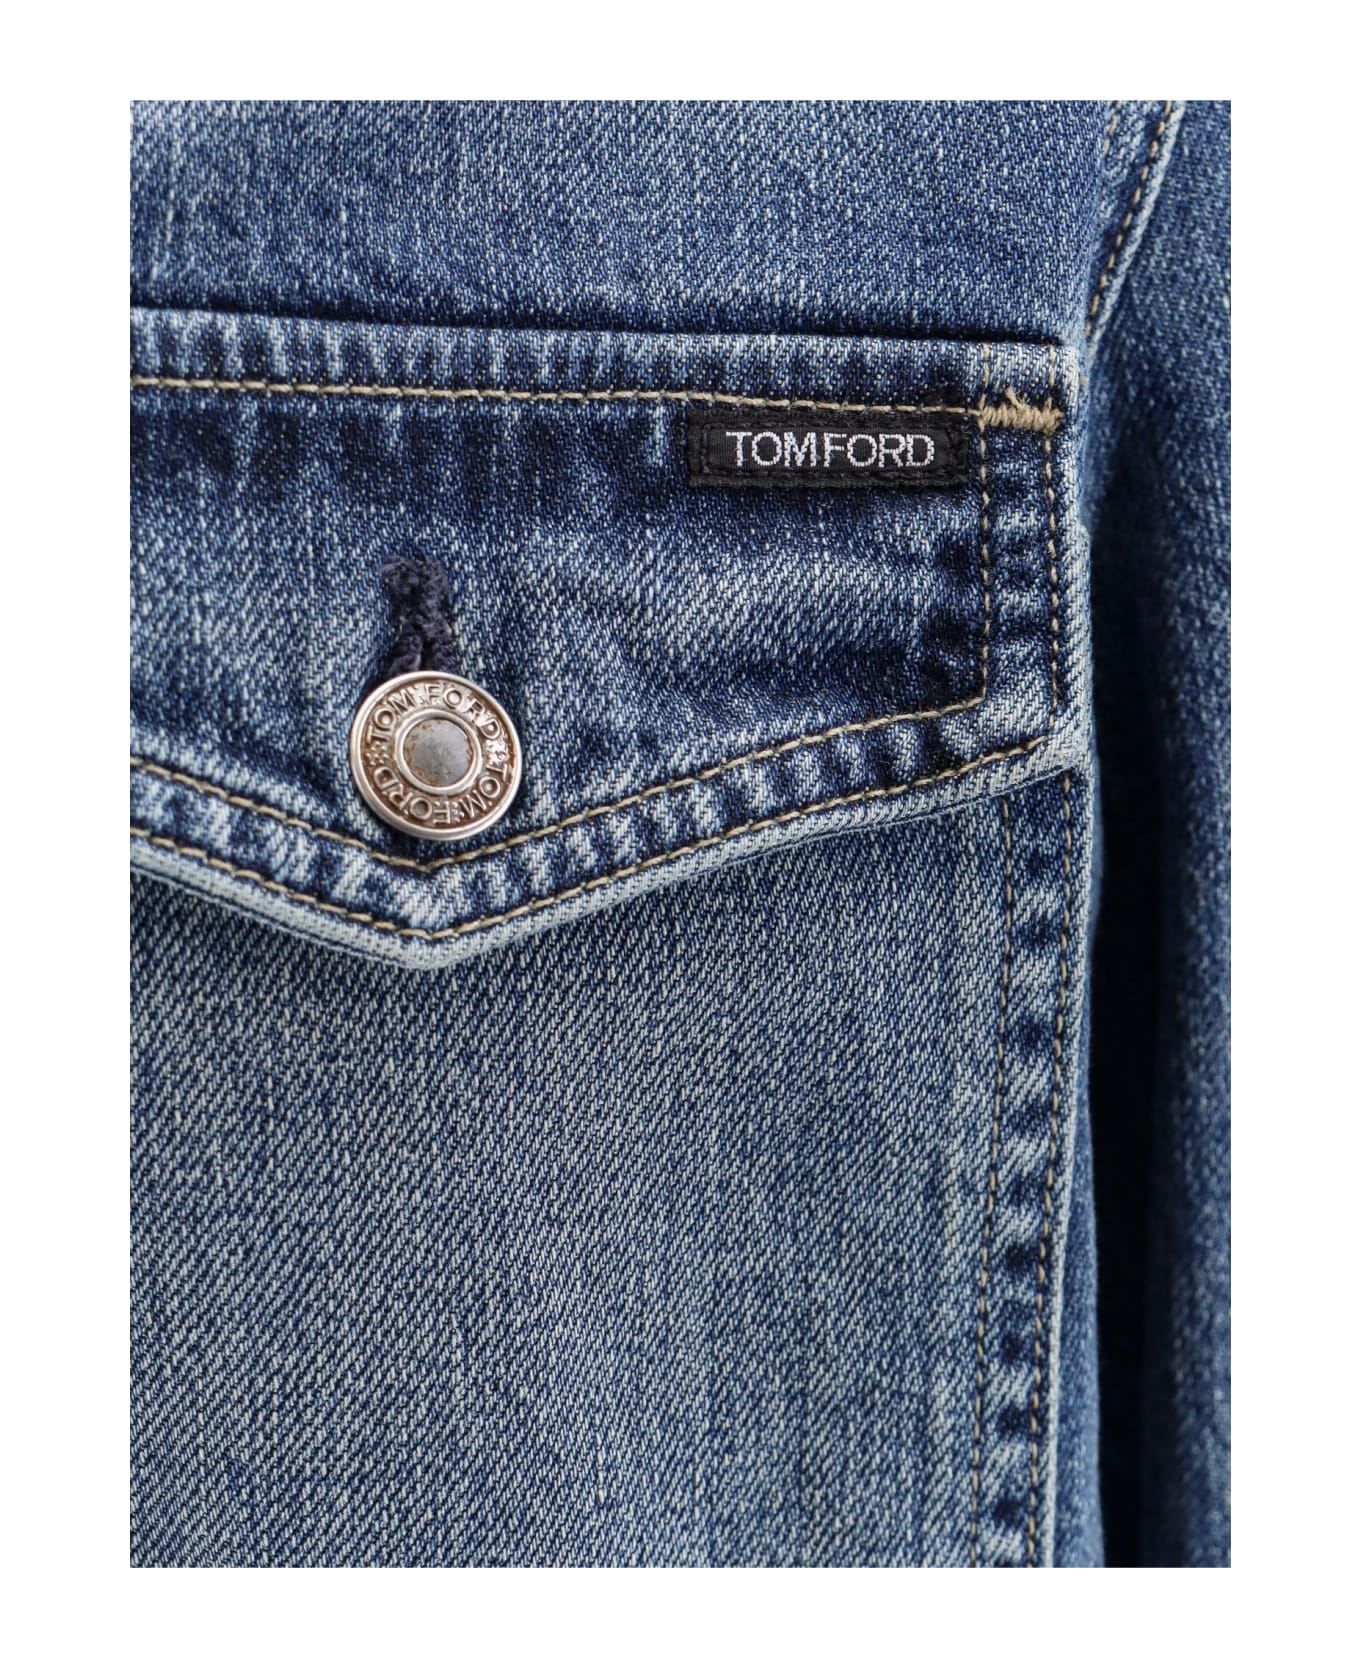 Tom Ford Jacket - Blue ジャケット